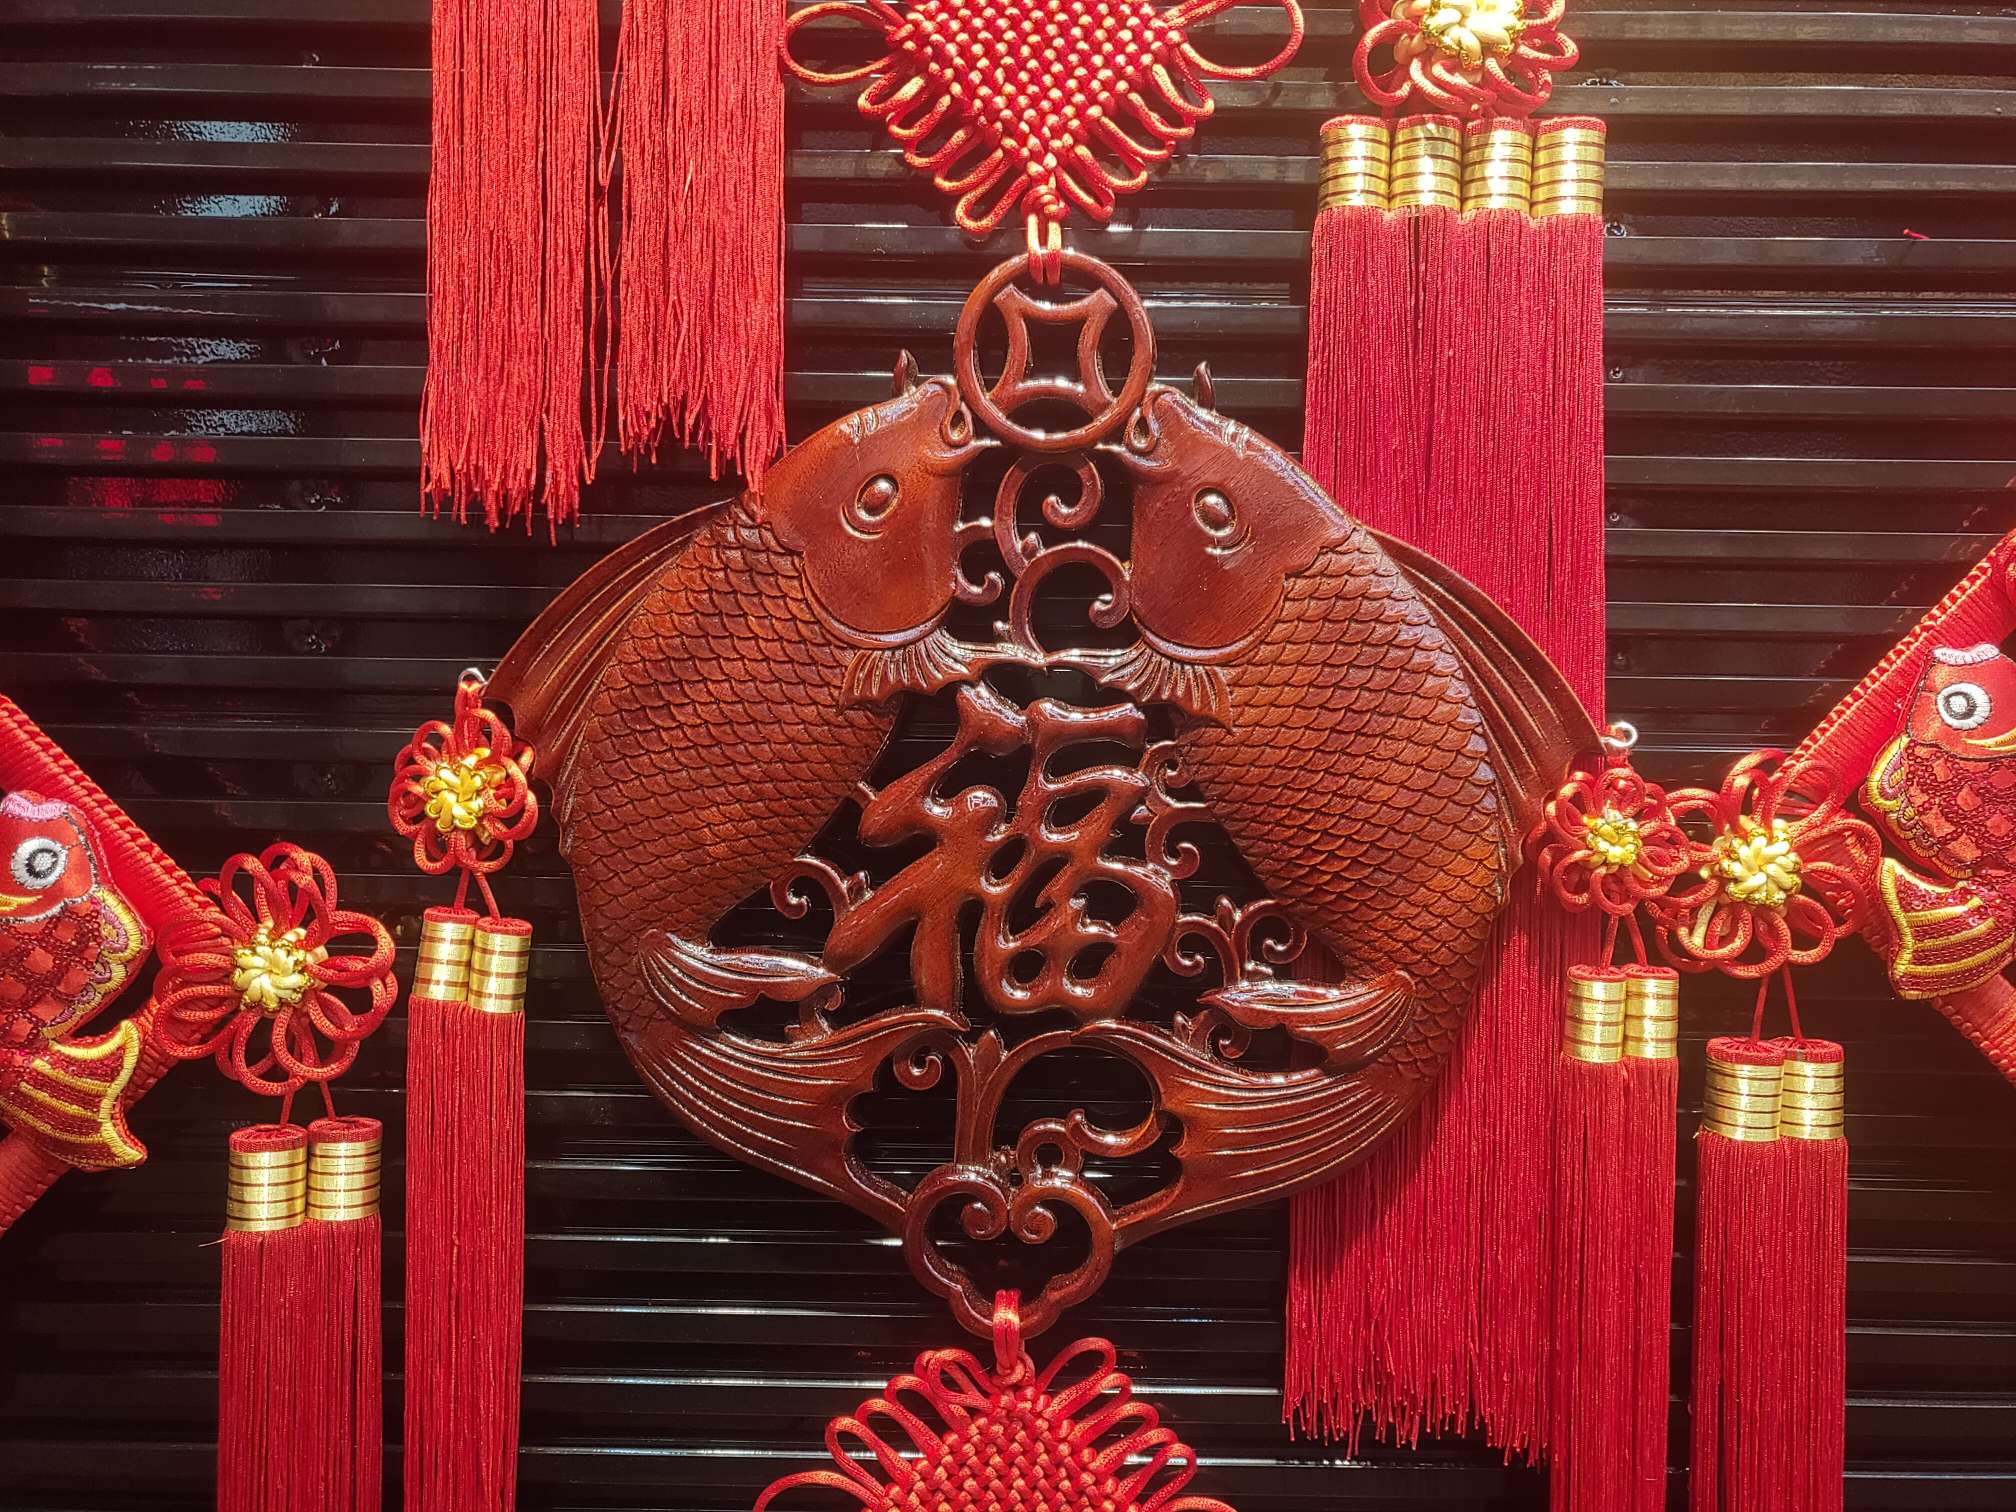 40#方形木雕57春节喜庆用品节日用品红木精品图